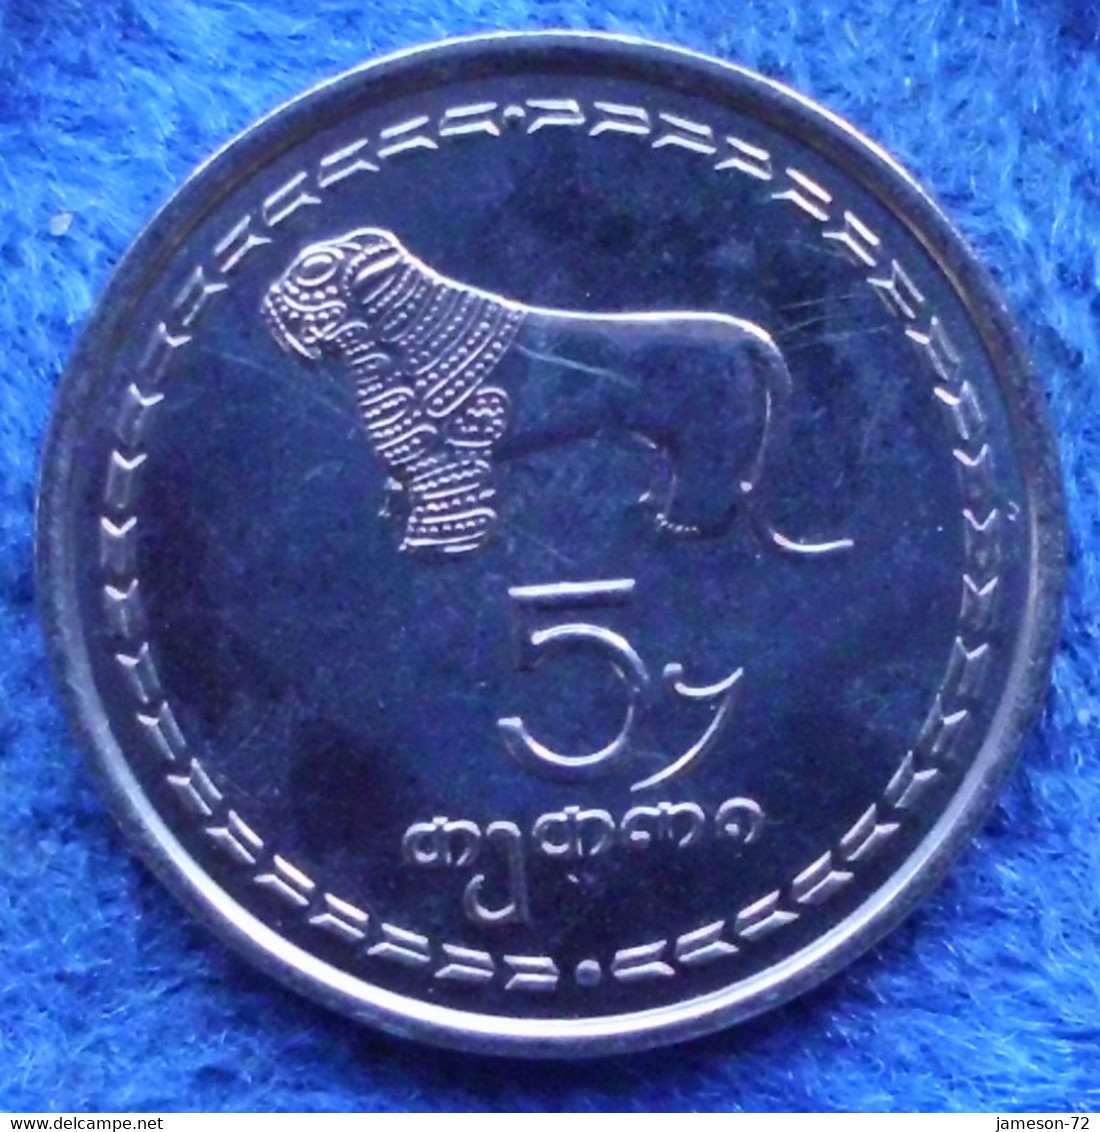 GEORGIA - 5 Thetri 1993 Lion KM# 78 Independent Republic (1991) - Edelweiss Coins - Georgia